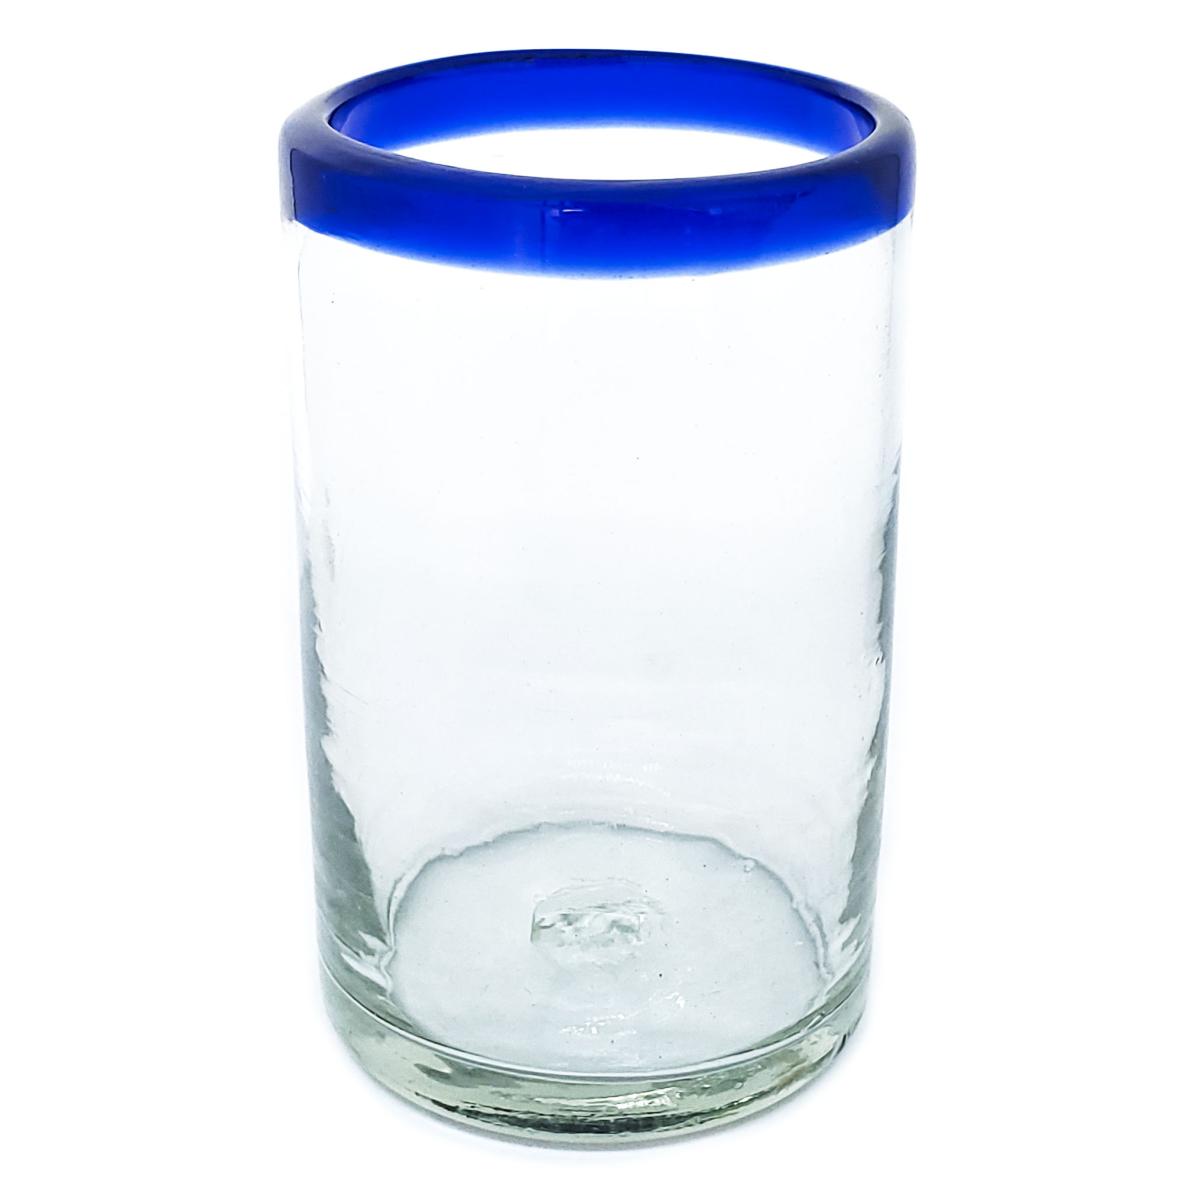 Borde de Color / Juego de 6 vasos grandes con borde azul cobalto / Éstos artesanales vasos le darán un toque clásico a su bebida favorita.